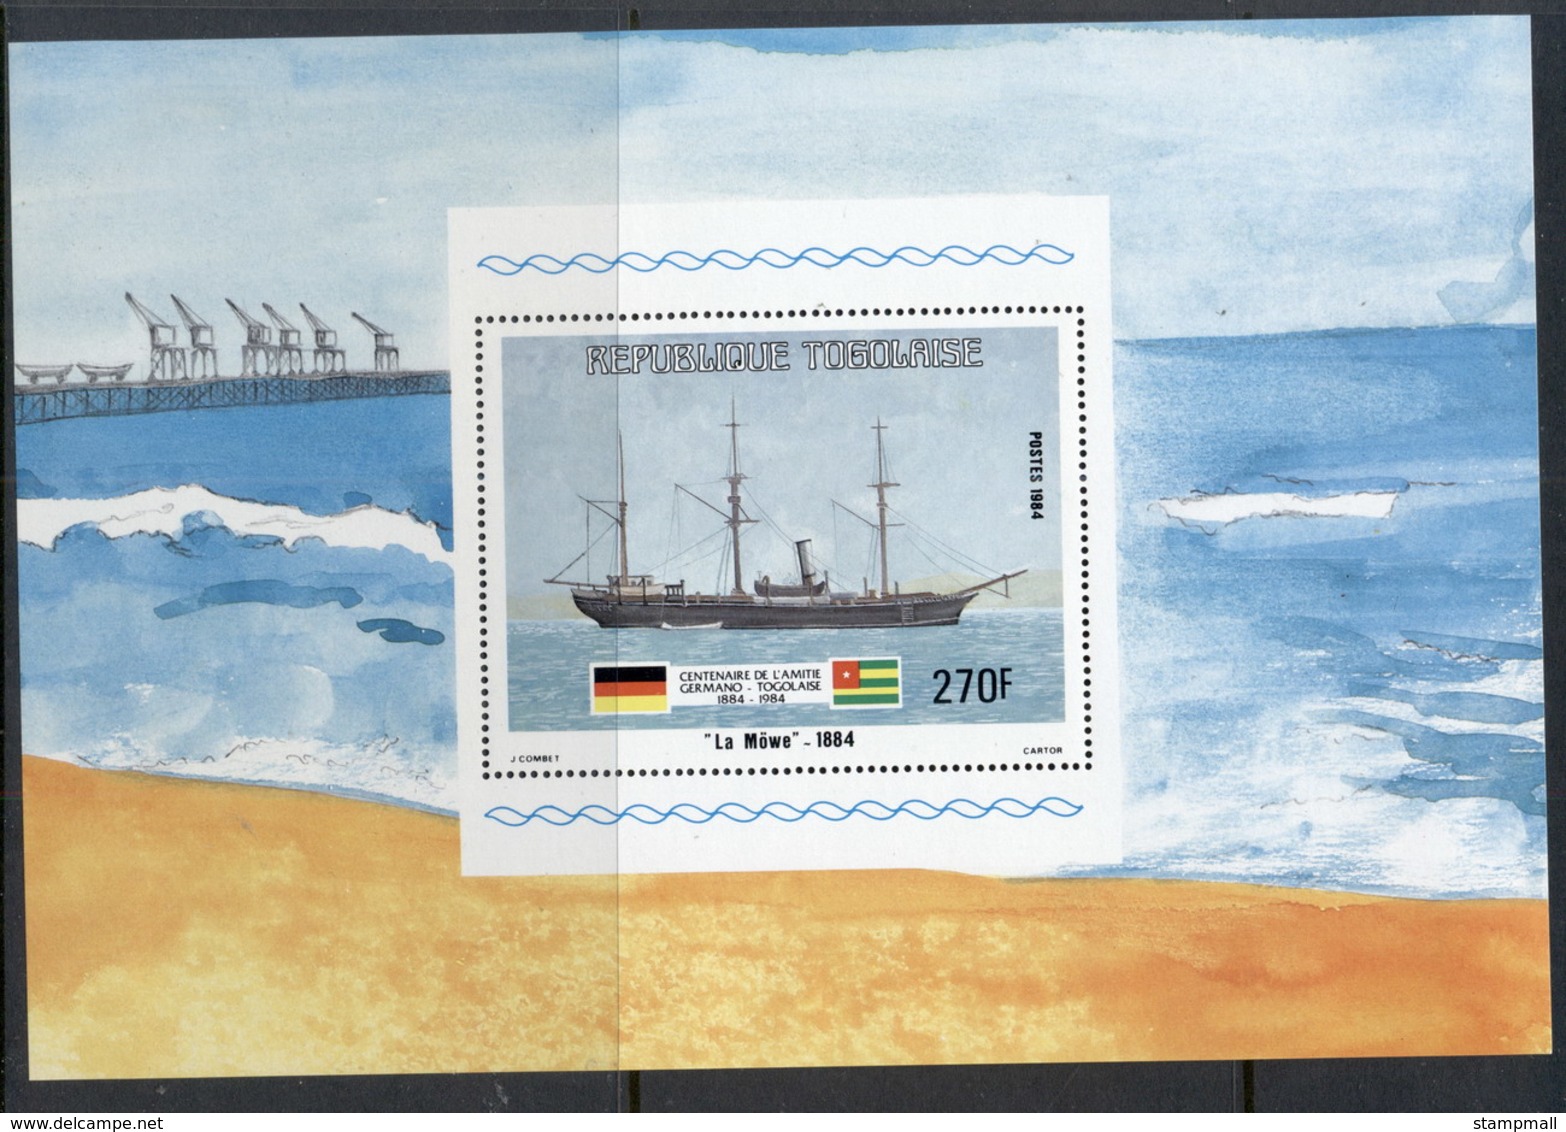 Togo 1984 German Ship Mowe MS MLH - Togo (1960-...)